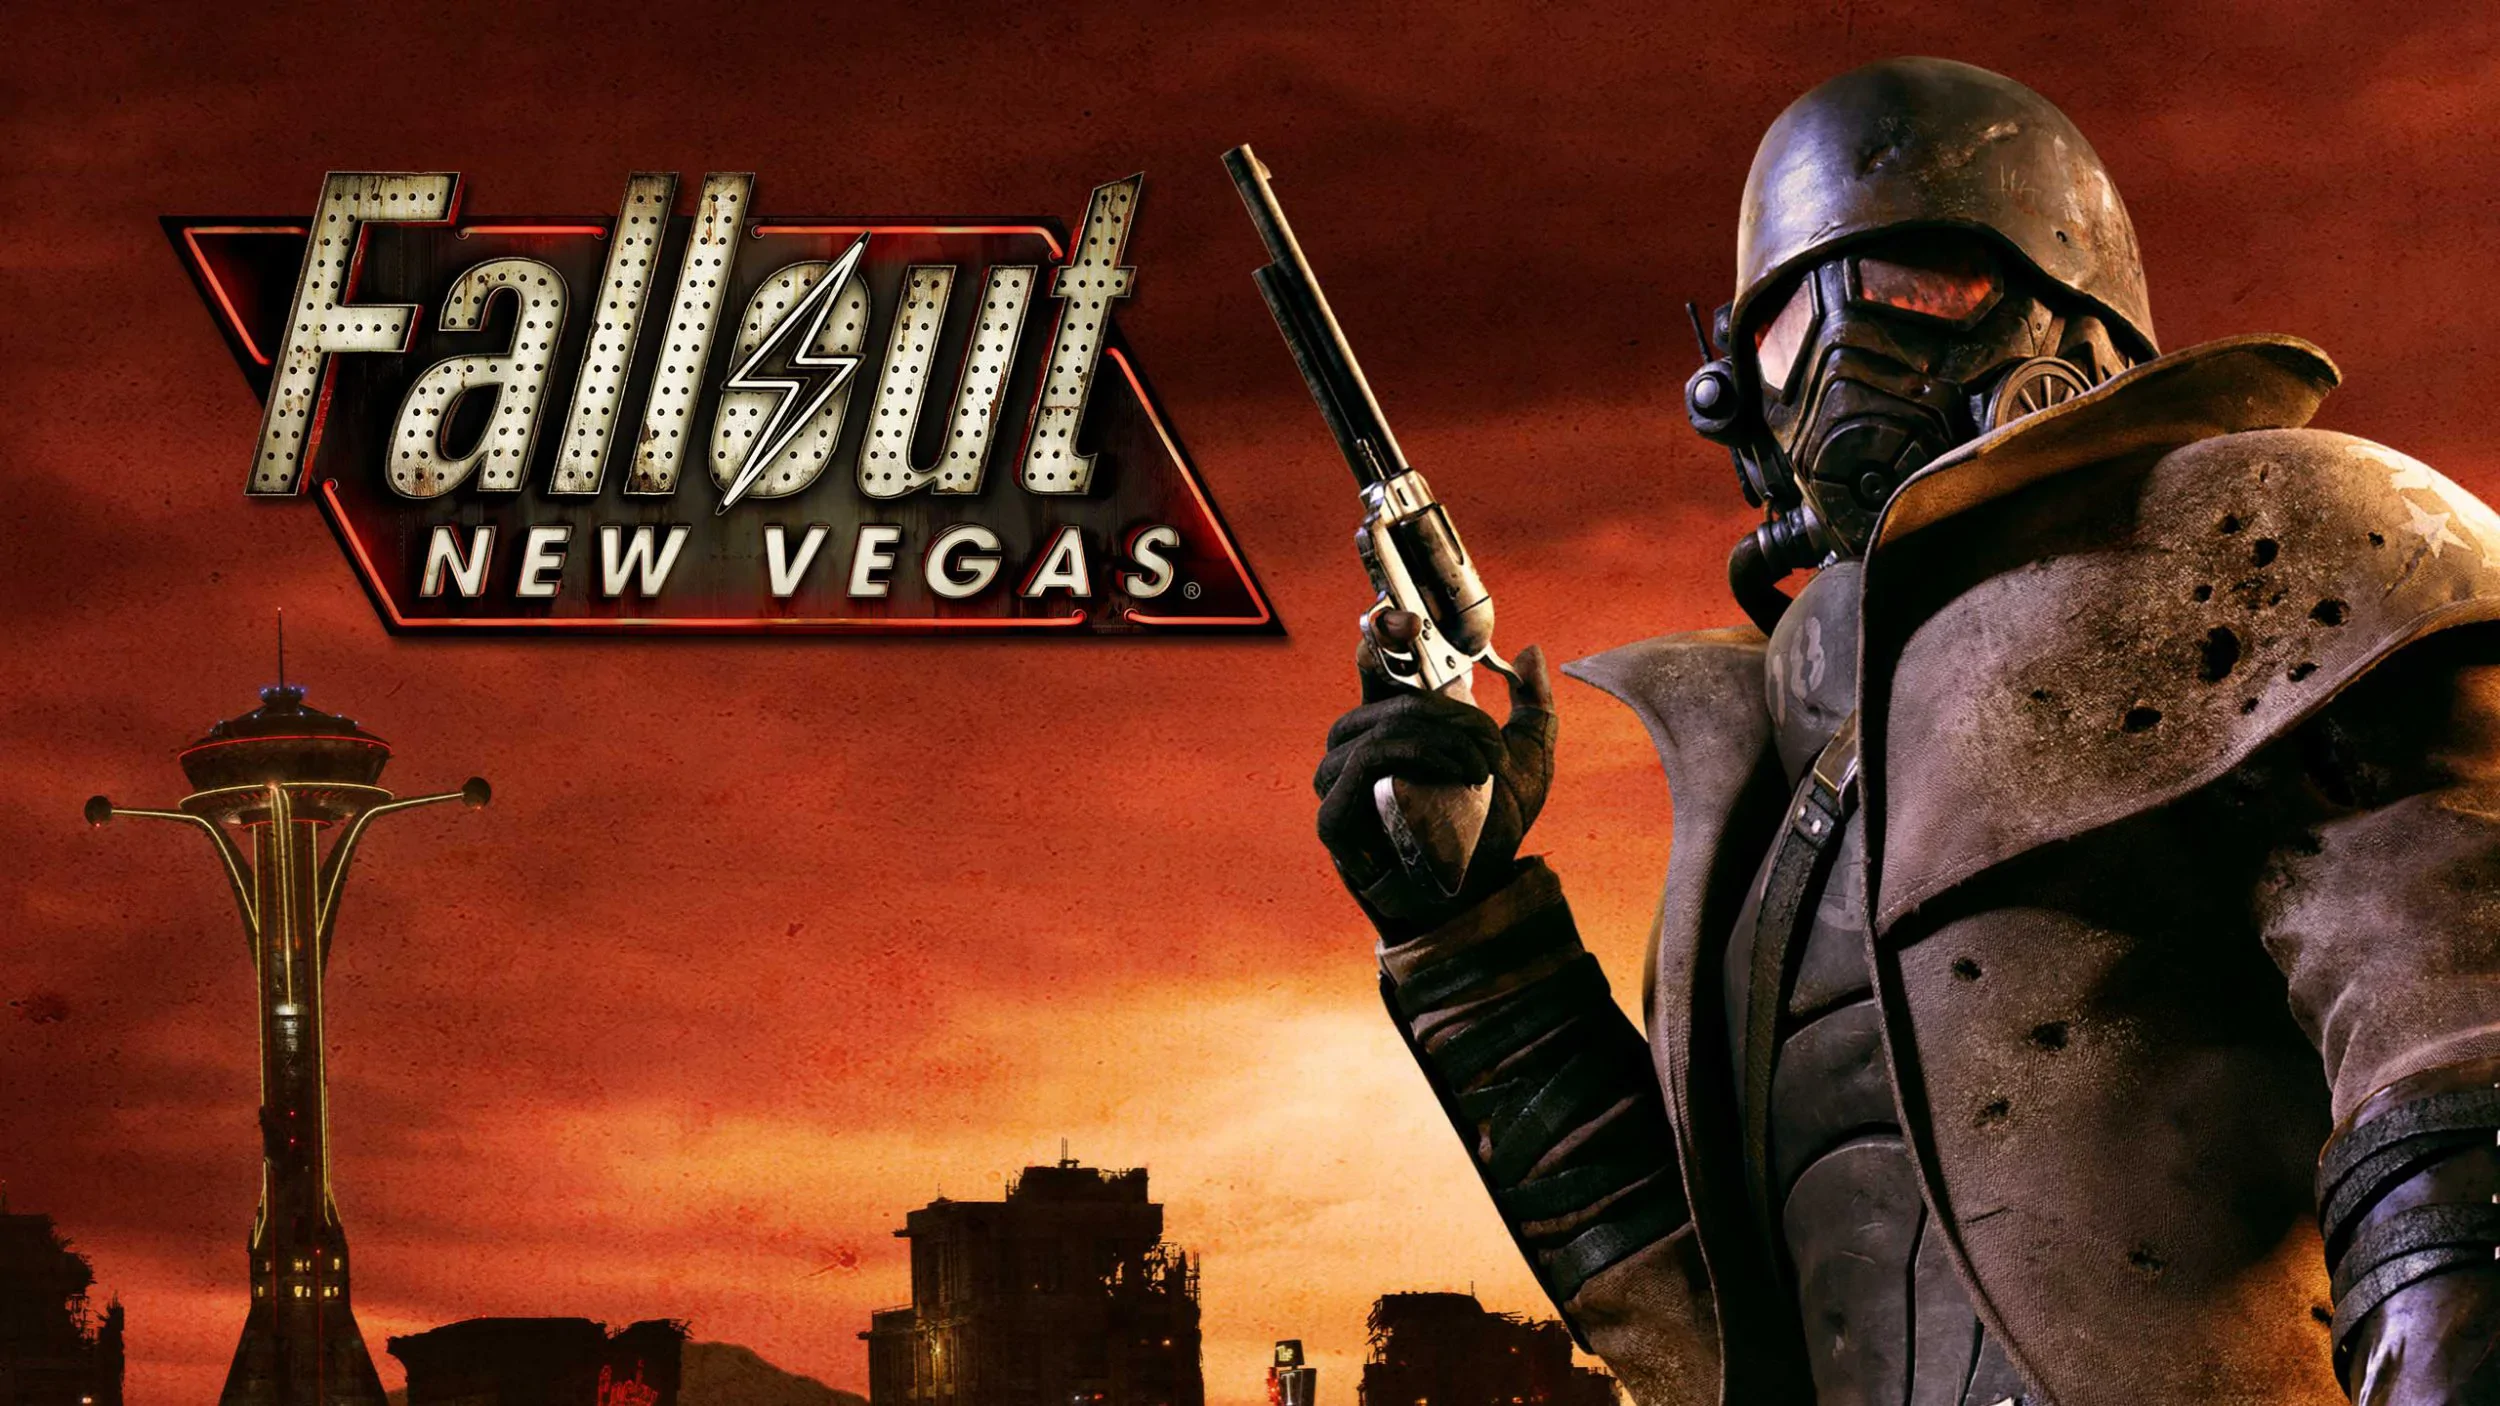 Są już plany na drugi sezon Fallout. Po lupę brany New Vegas!